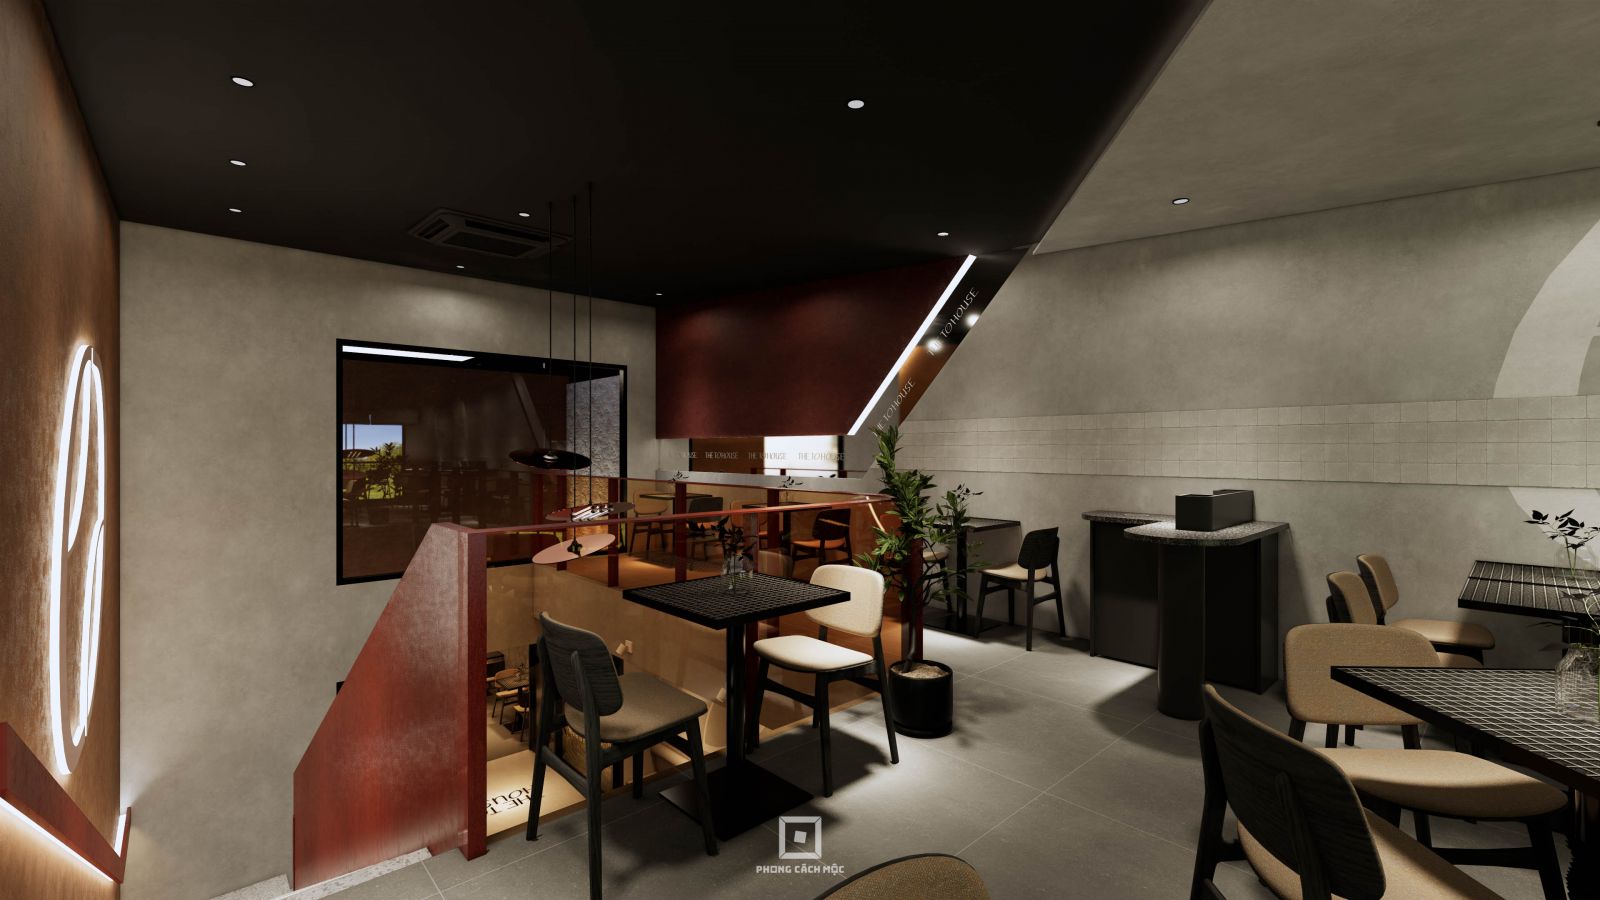 Tổng thể màu sắc đối lập, ứng dụng chất liệu mới trong thiết kế tạo nên sự sang trọng cho quán cafe.